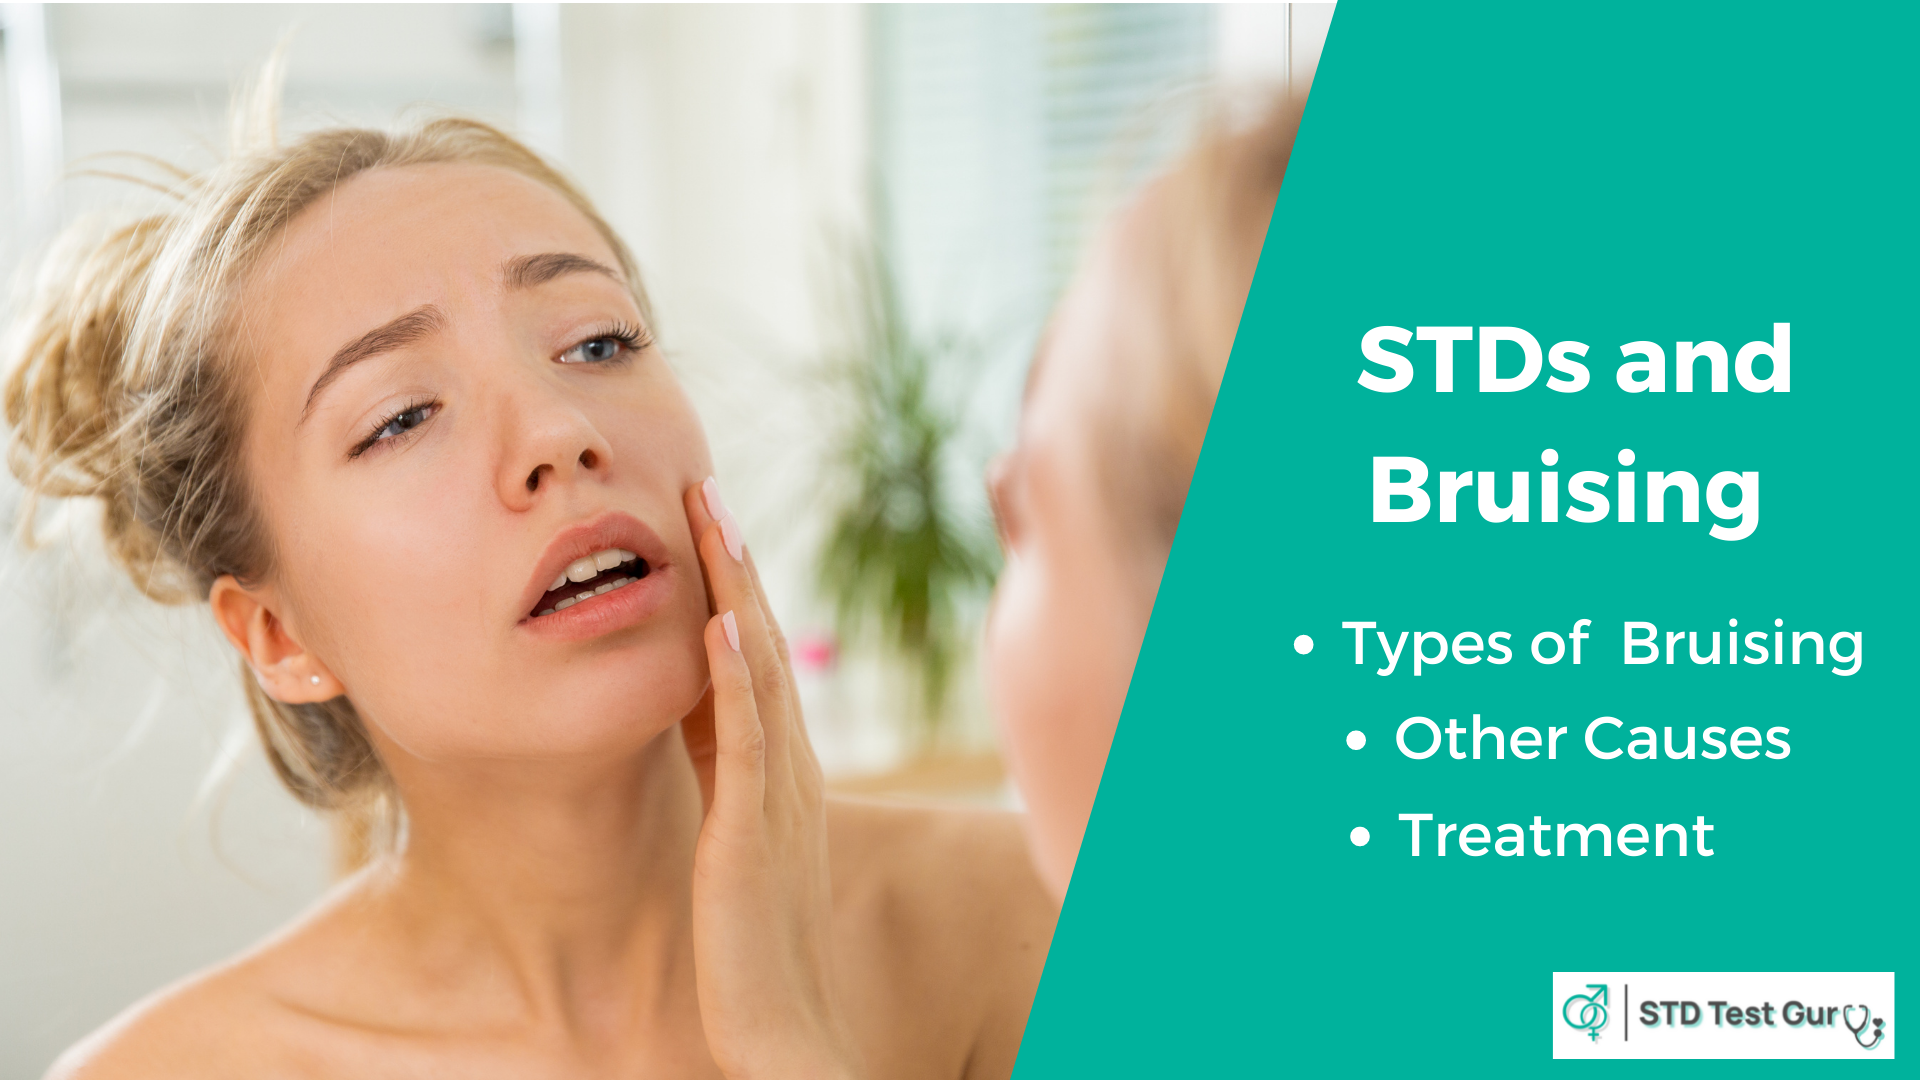 STDs that cause bruising